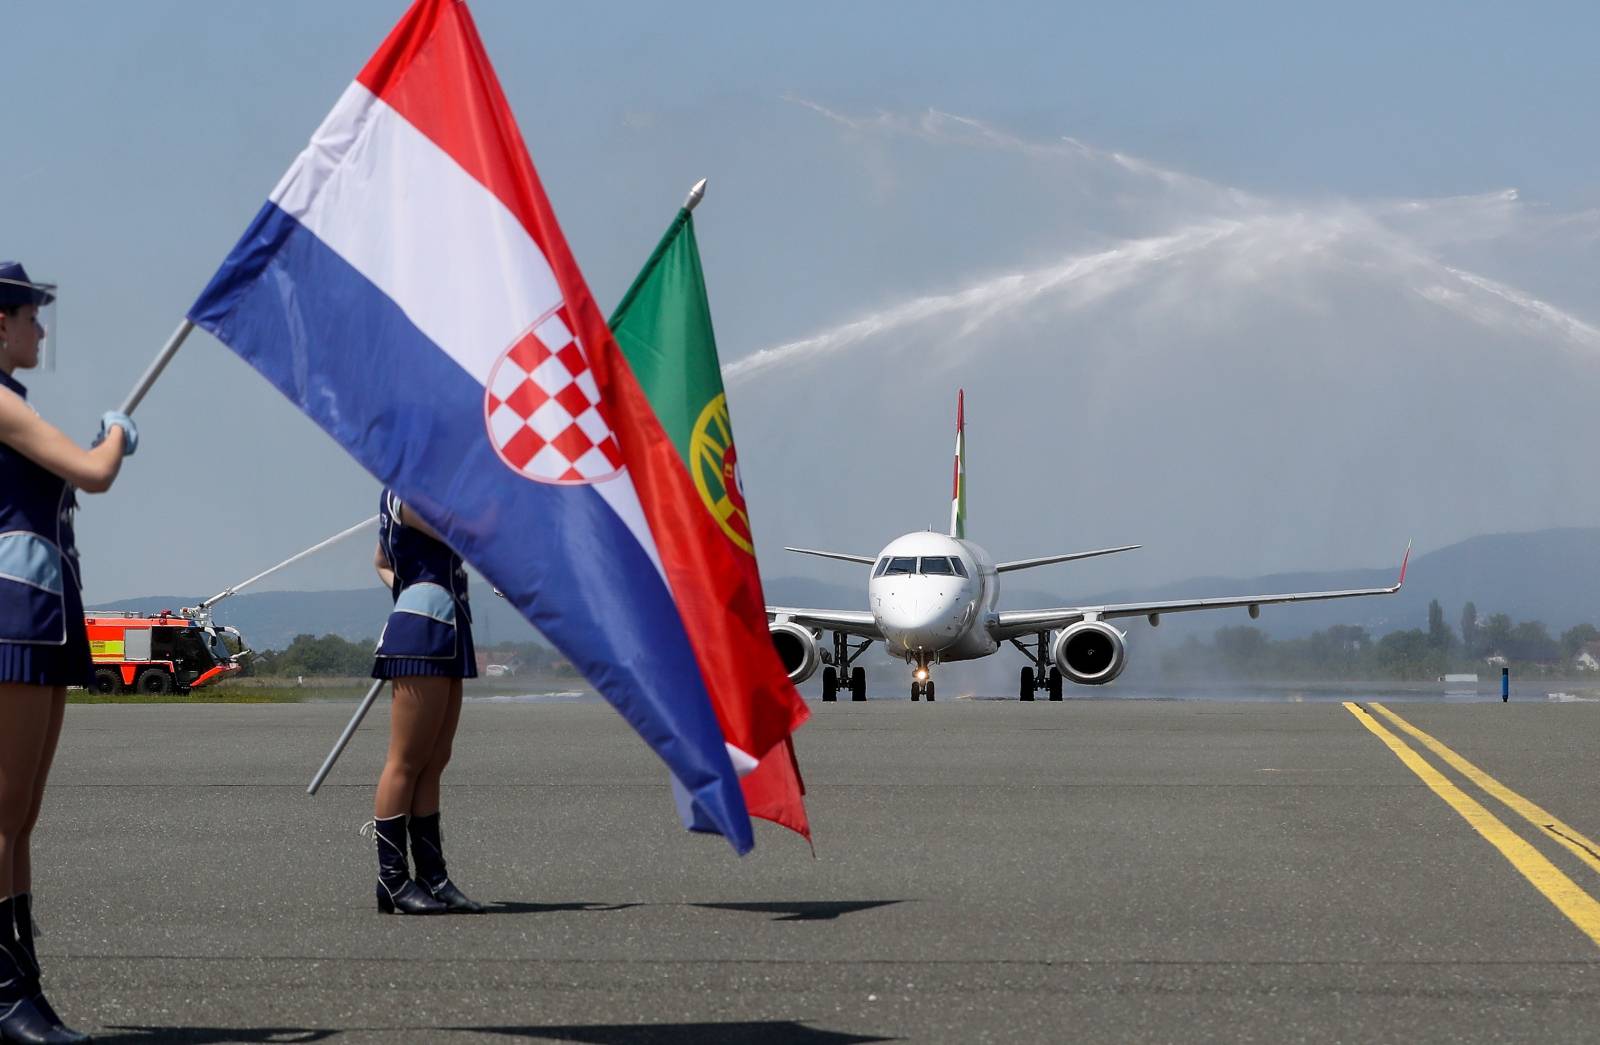 Aviokompanija TAP Portugal ponovno povezuje putnike između Zagreba i Lisabona